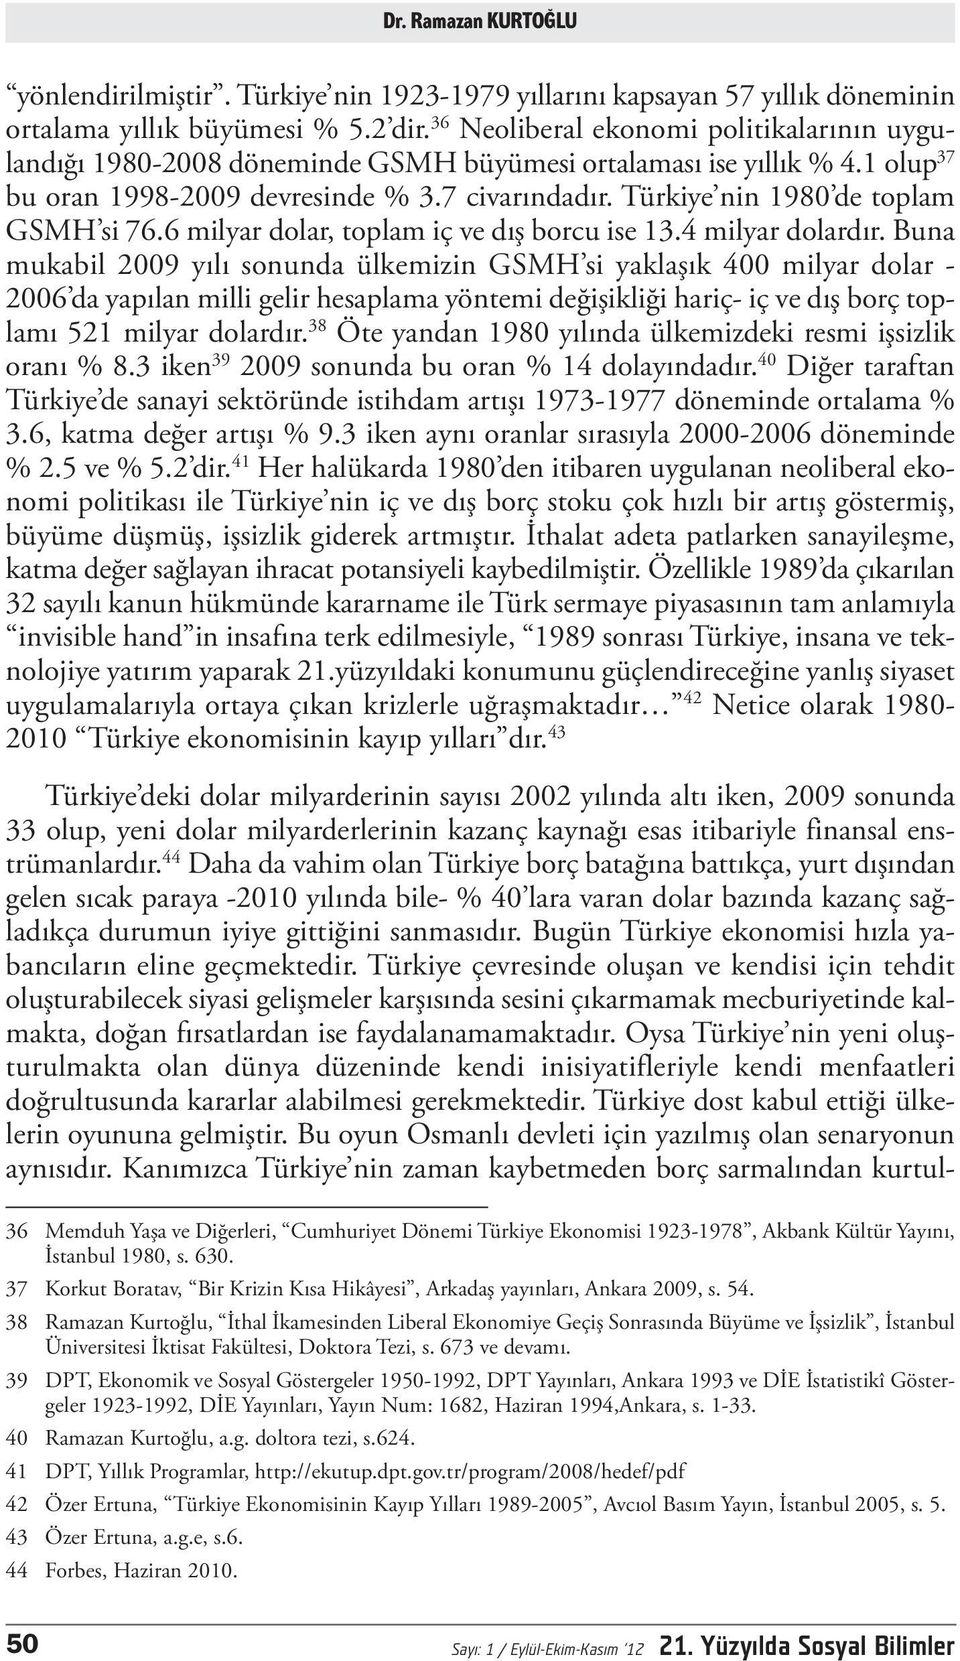 Türkiye nin 1980 de toplam GSMH si 76.6 milyar dolar, toplam iç ve dış borcu ise 13.4 milyar dolardır.